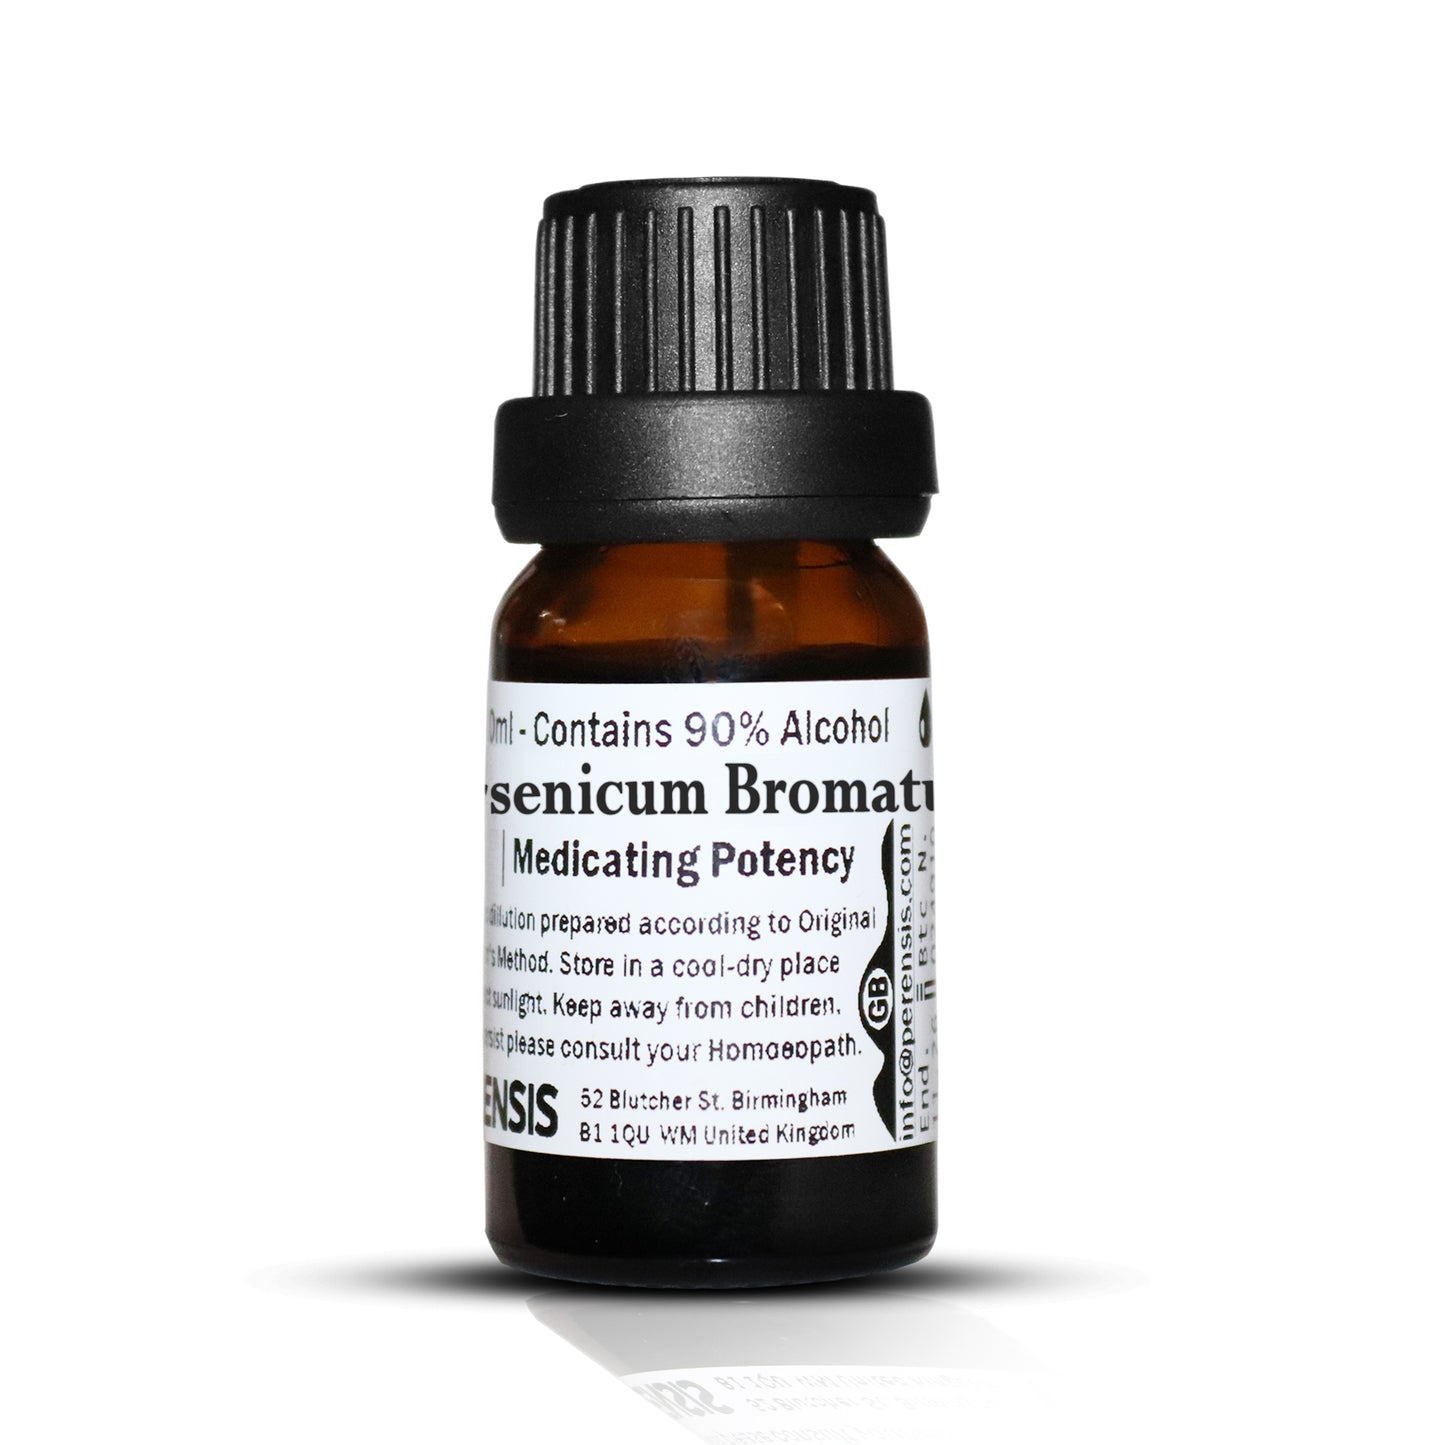 Arsenicum Bromatum